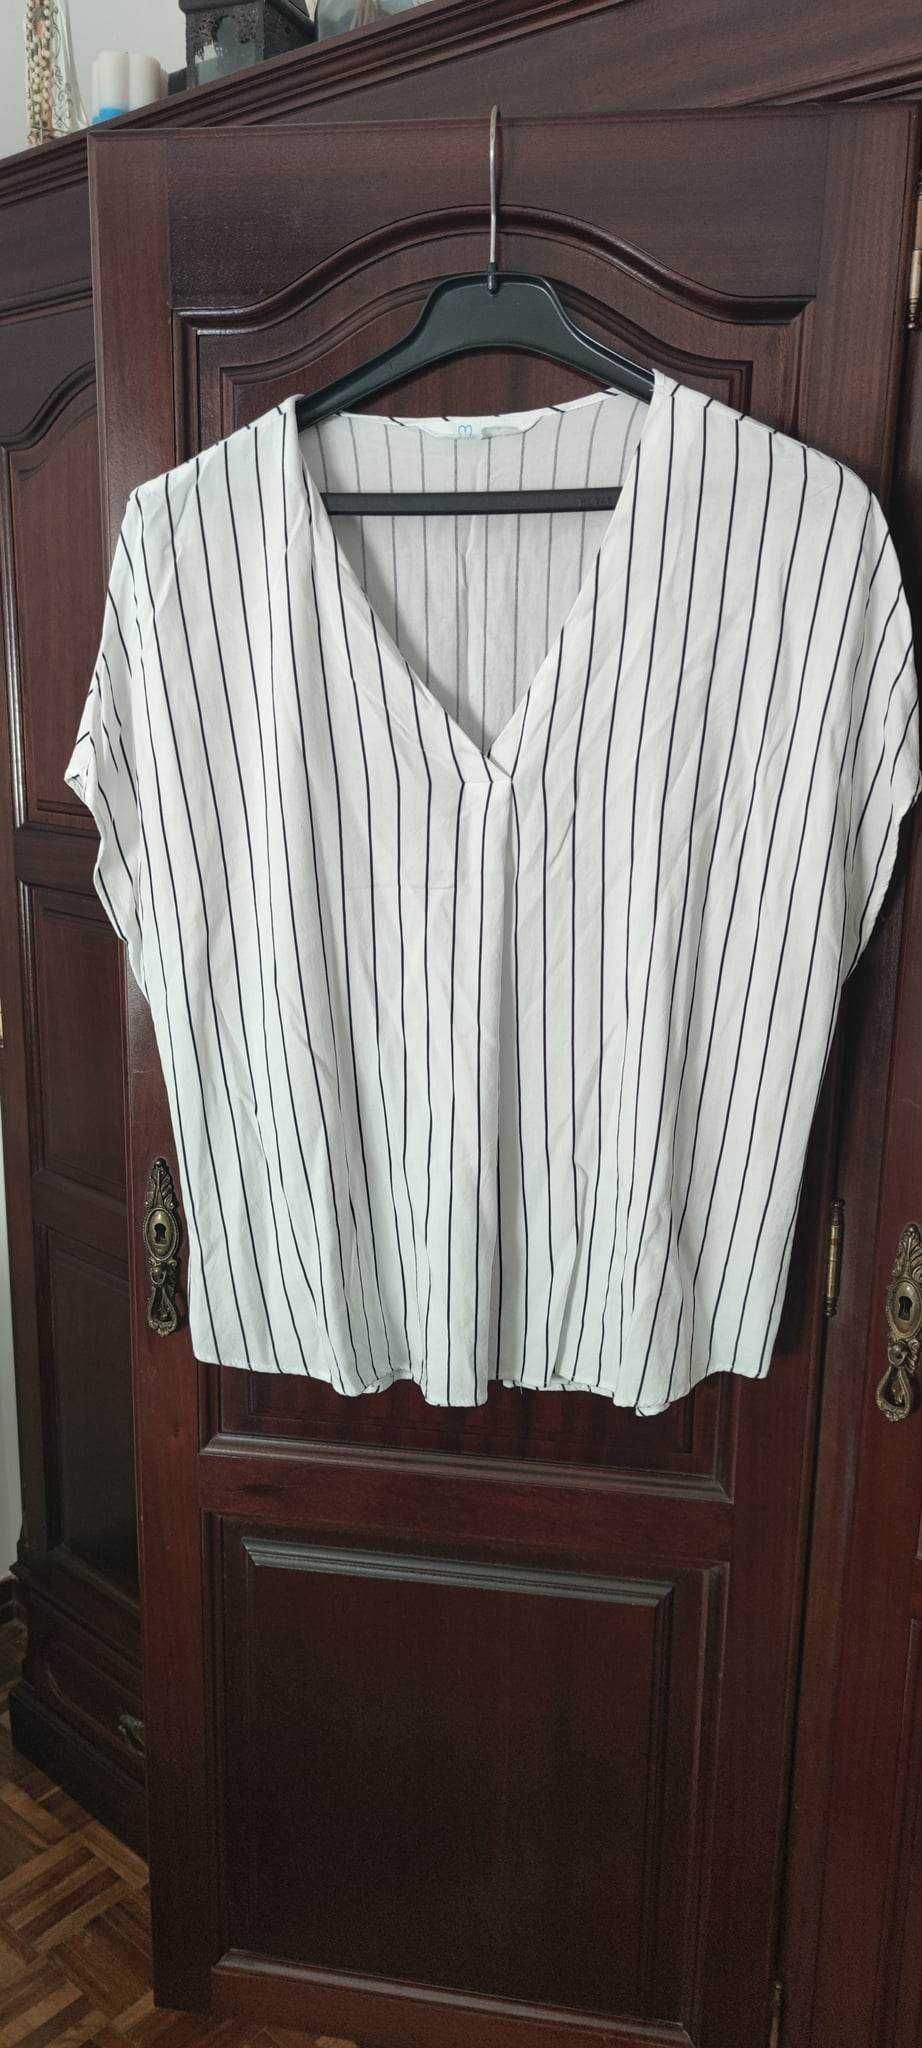 Blusa branca com riscas Azuis T46 (usada 1 vez)